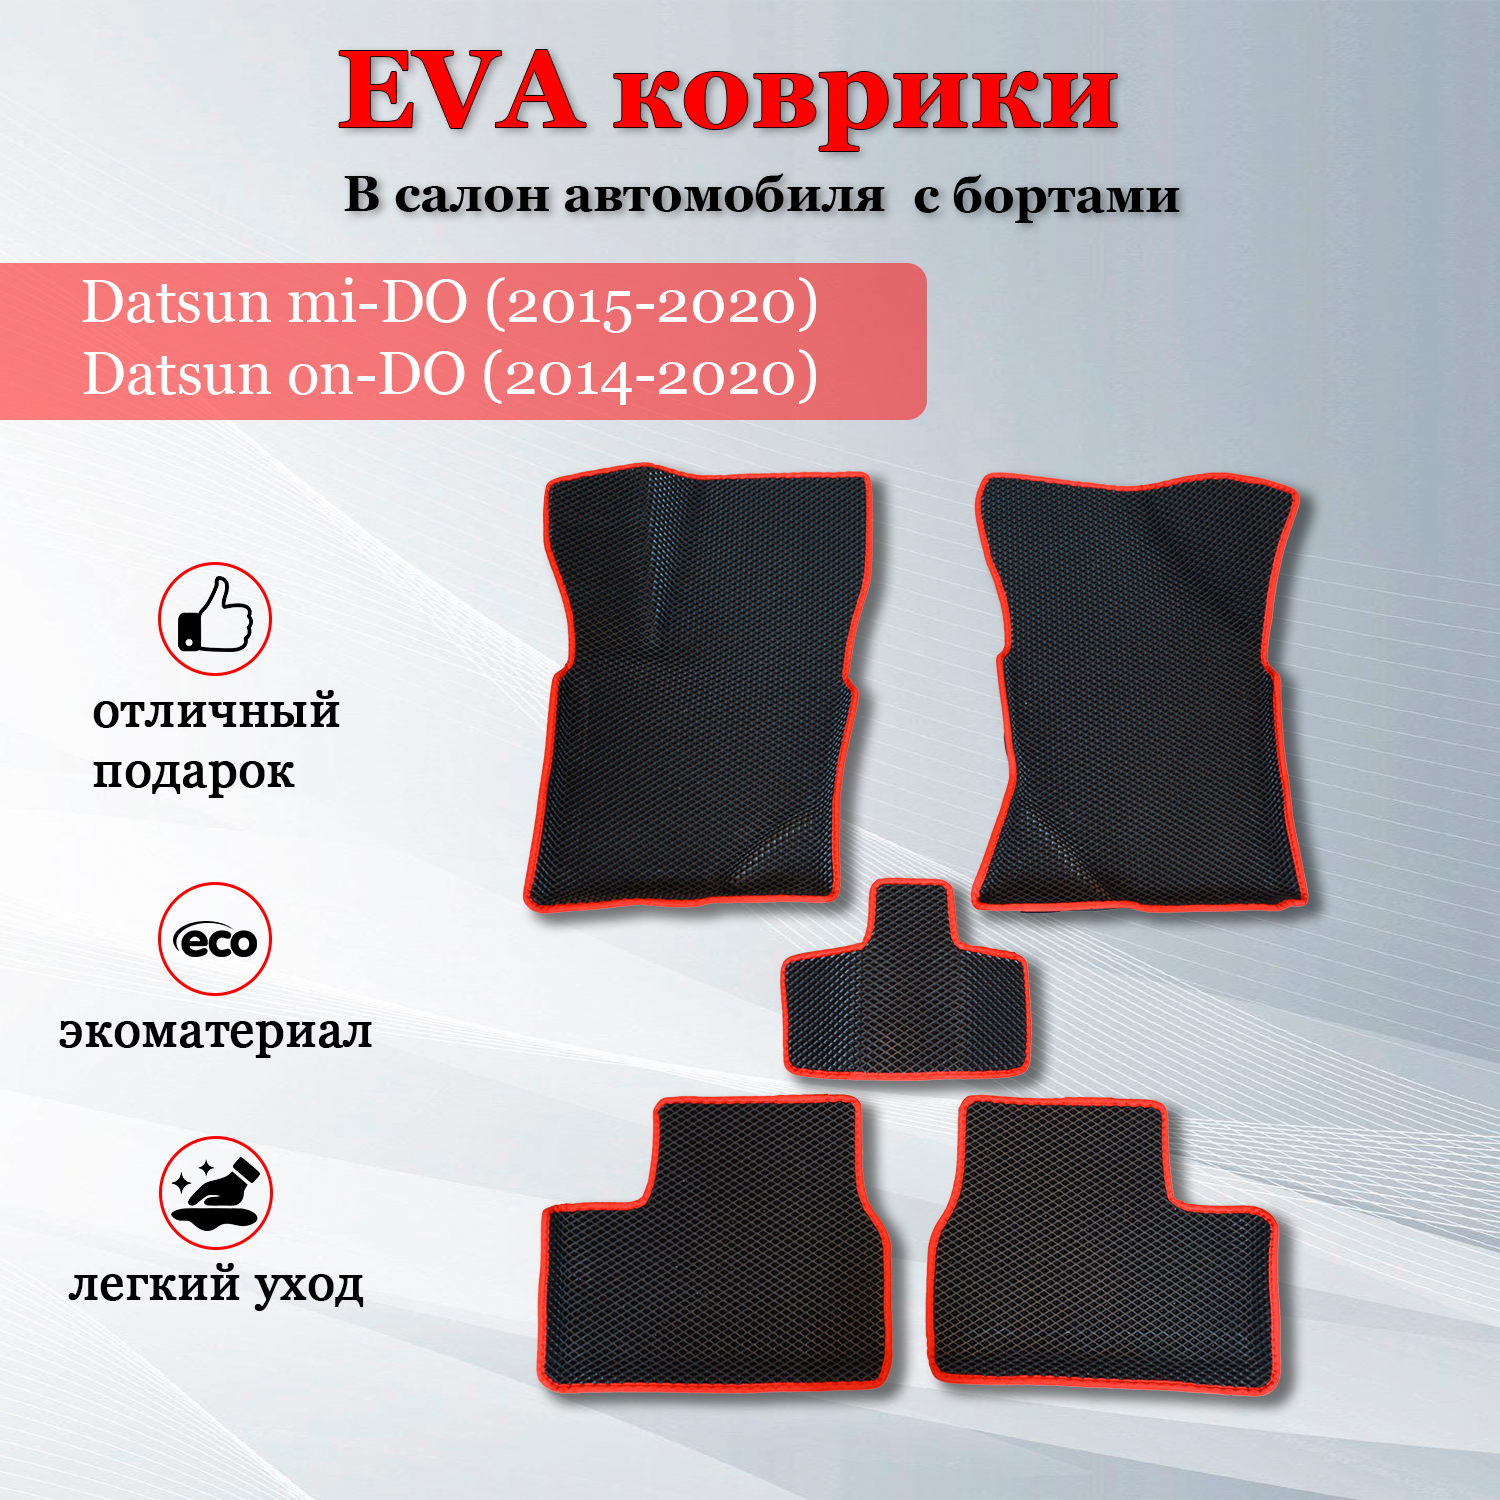 EVA (EВА ЭВА) коврики с бортами в салон автомобиля Датсун ми-До / Datsun mi-DO (2015-2020) черные/красный кант